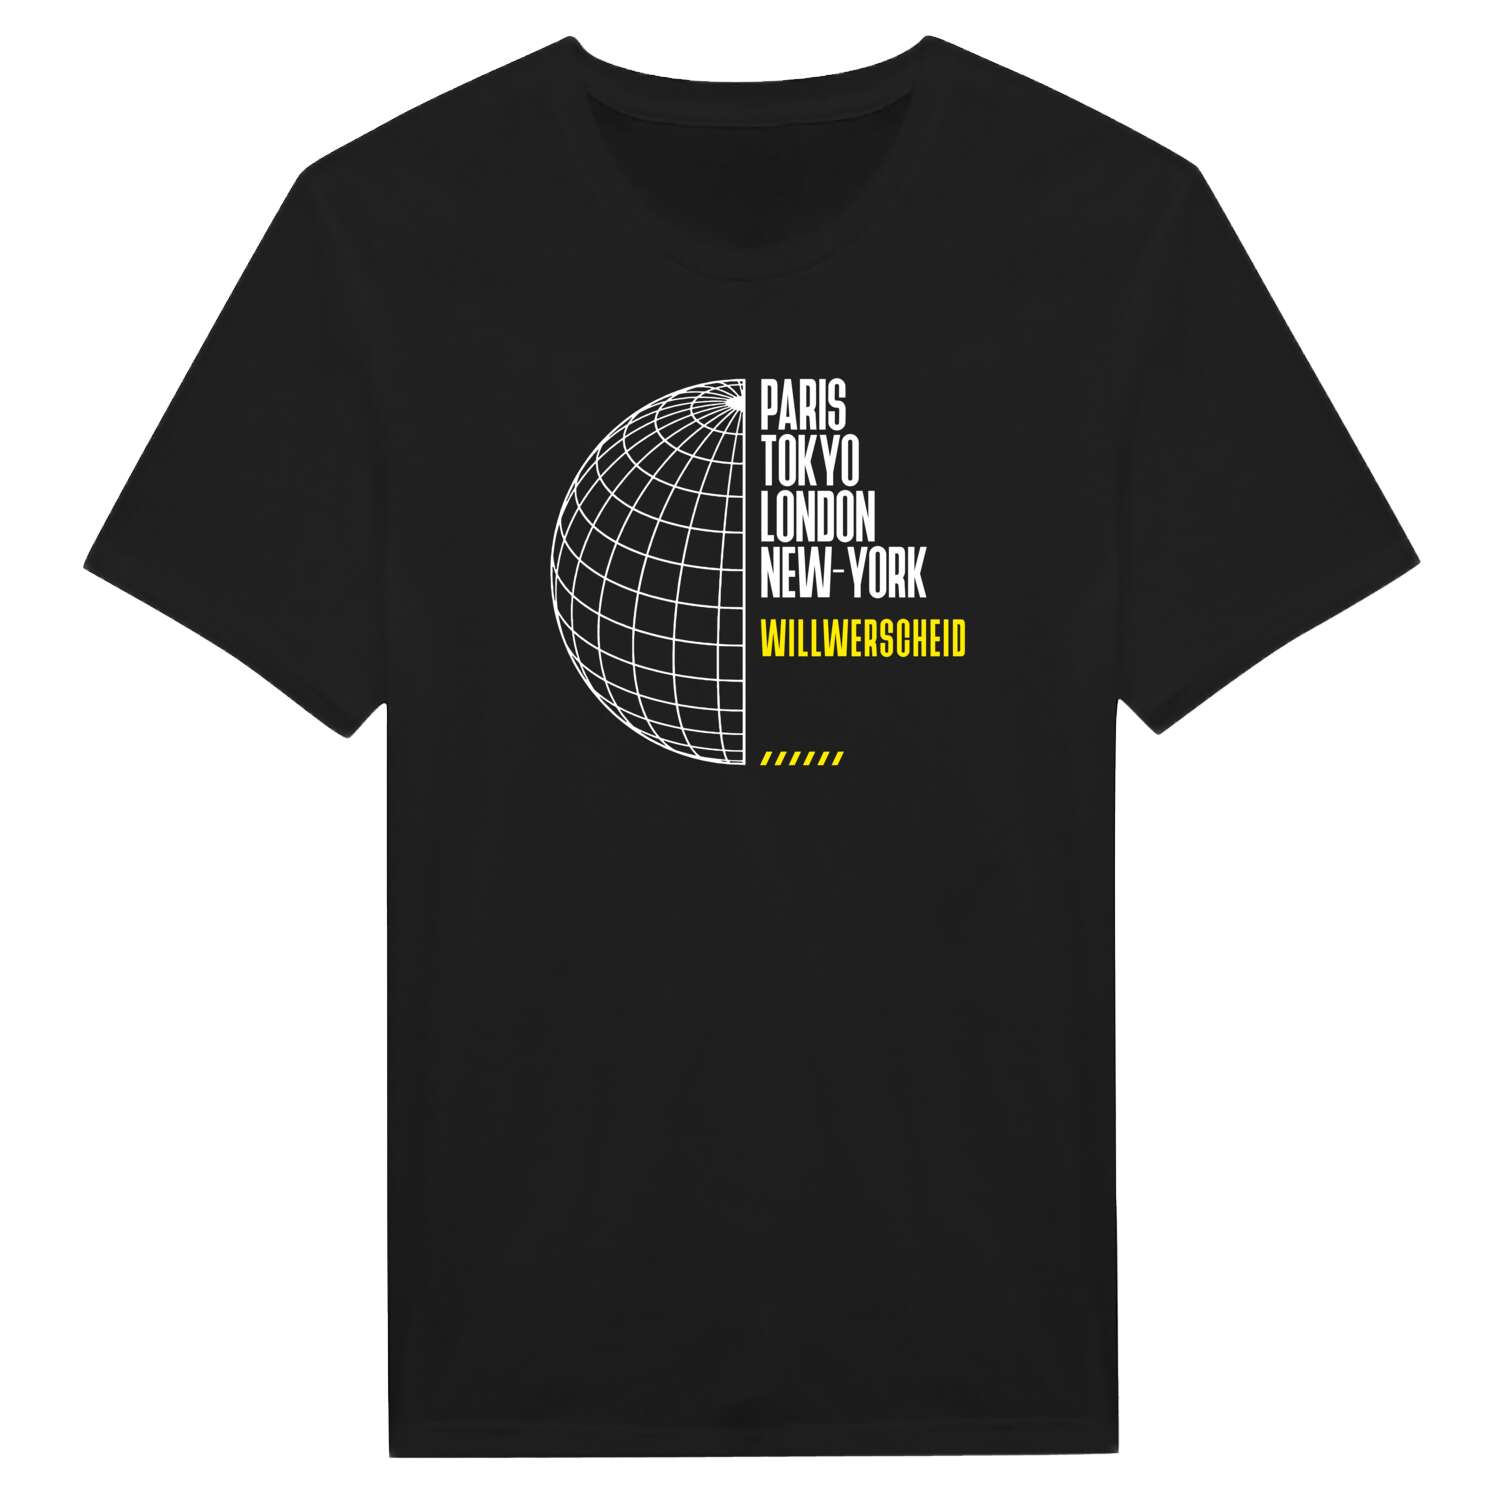 Willwerscheid T-Shirt »Paris Tokyo London«